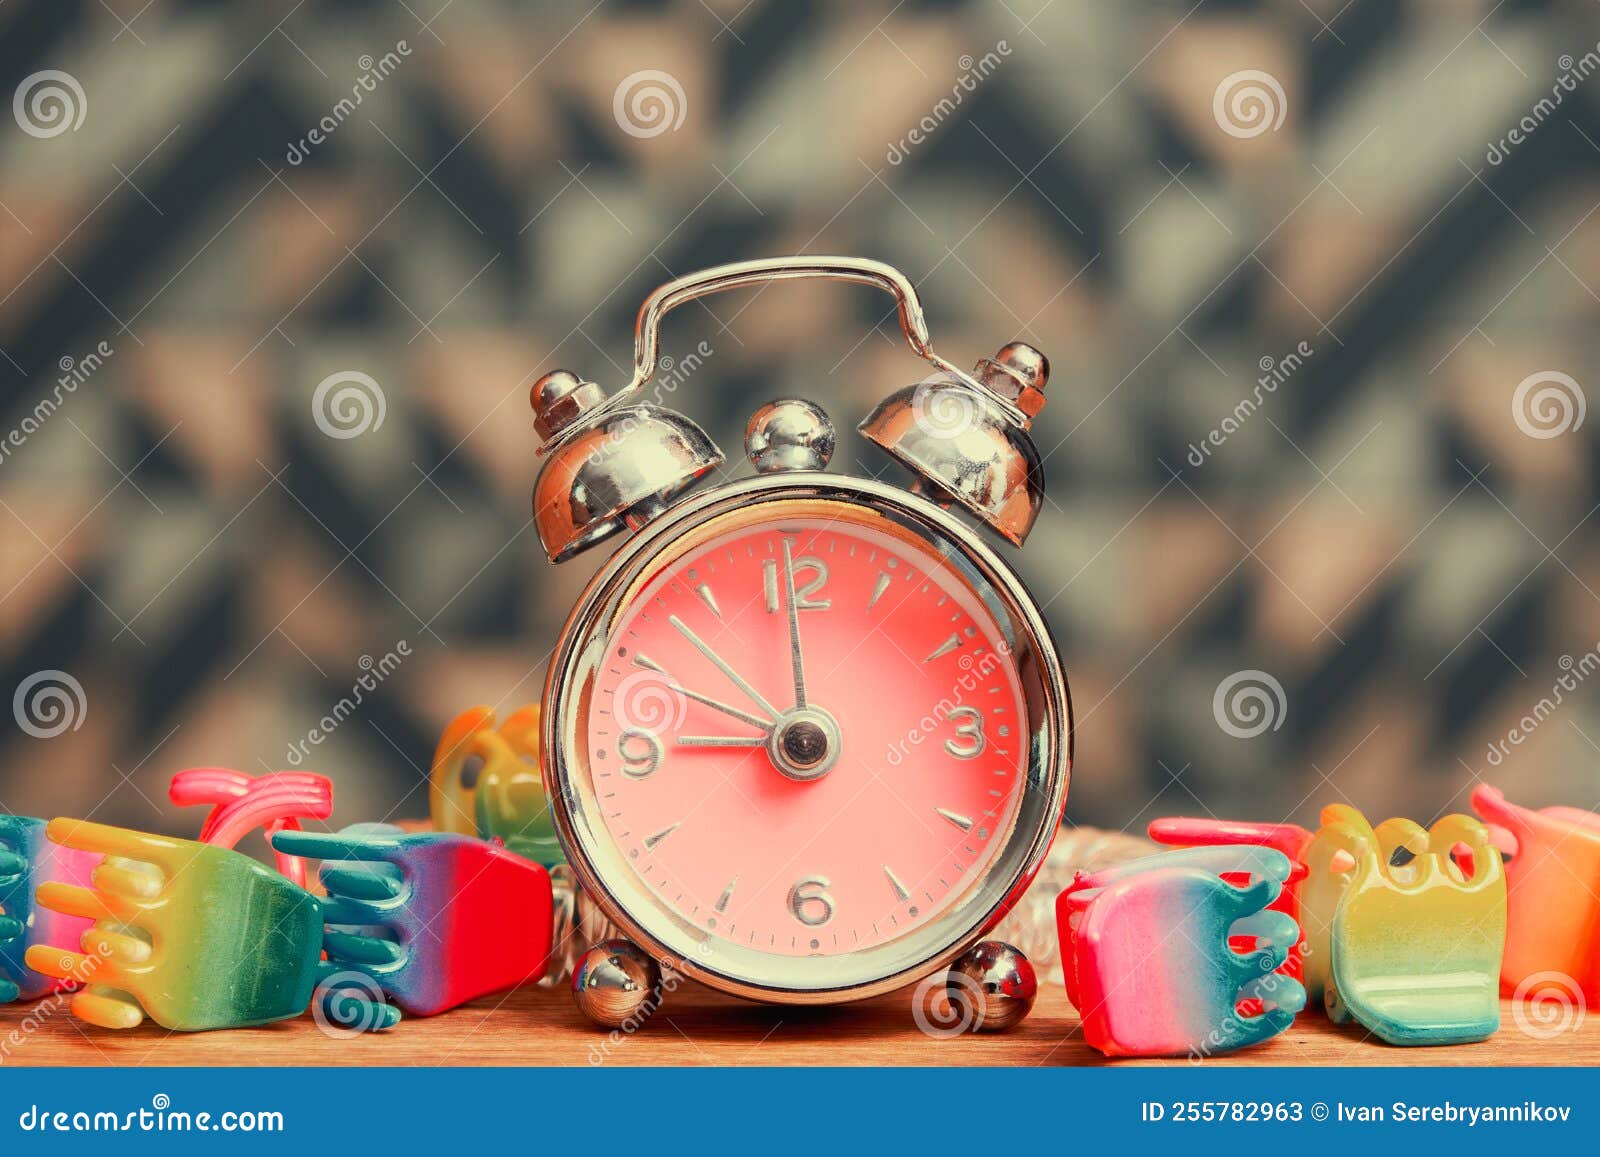 Pequeño Reloj De Despertador Vintage Con Accesorios Para Temporizador Y  Niñas Imagen de archivo - Imagen de rosa, giratoria: 255782963